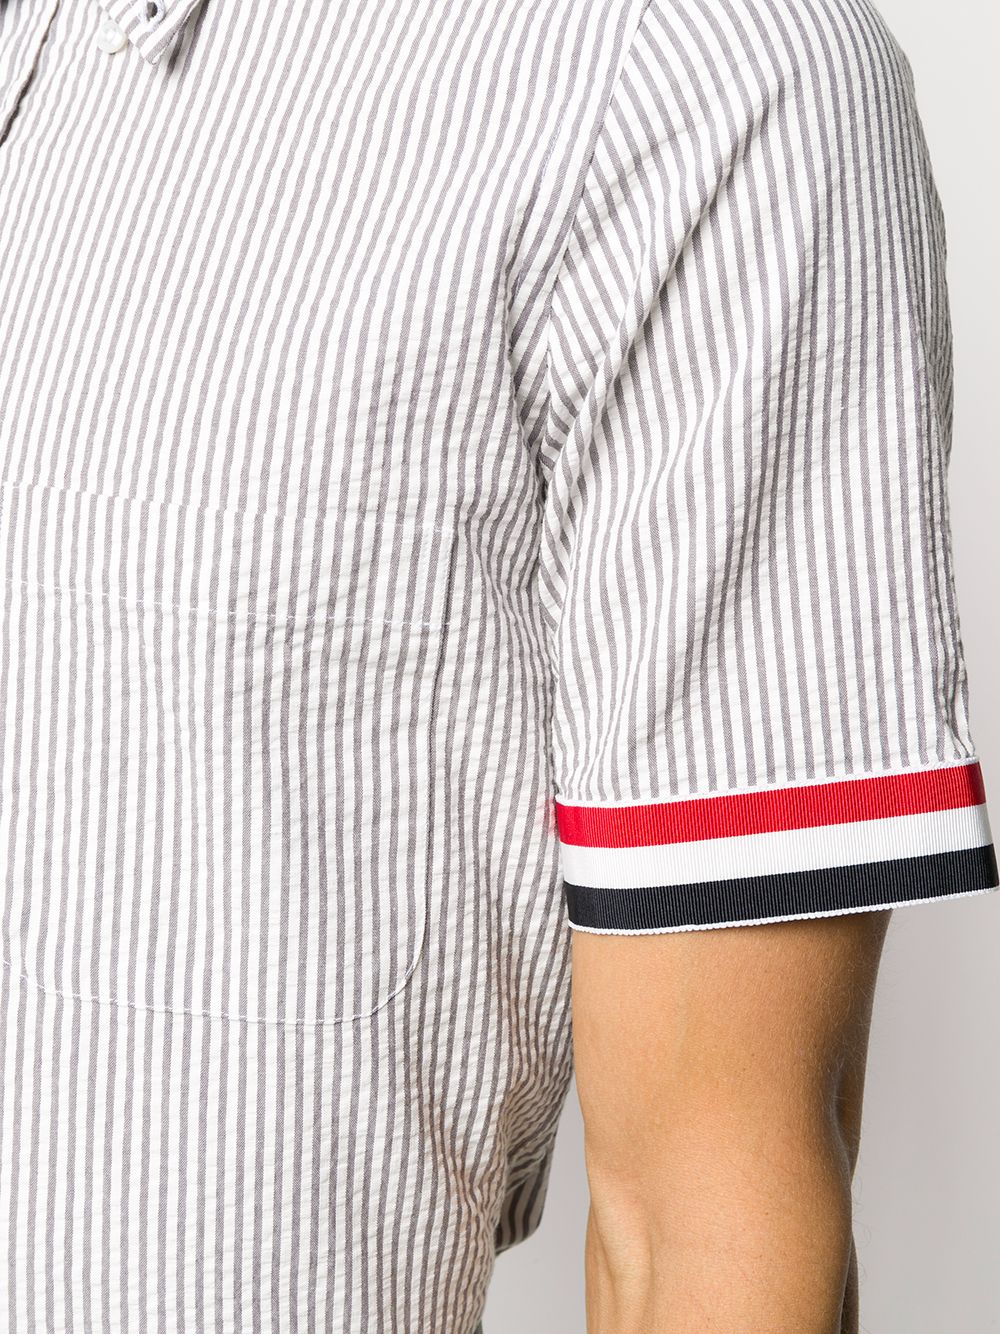 Shop Thom Browne Seersucker stripe button-down shirt with Express ...